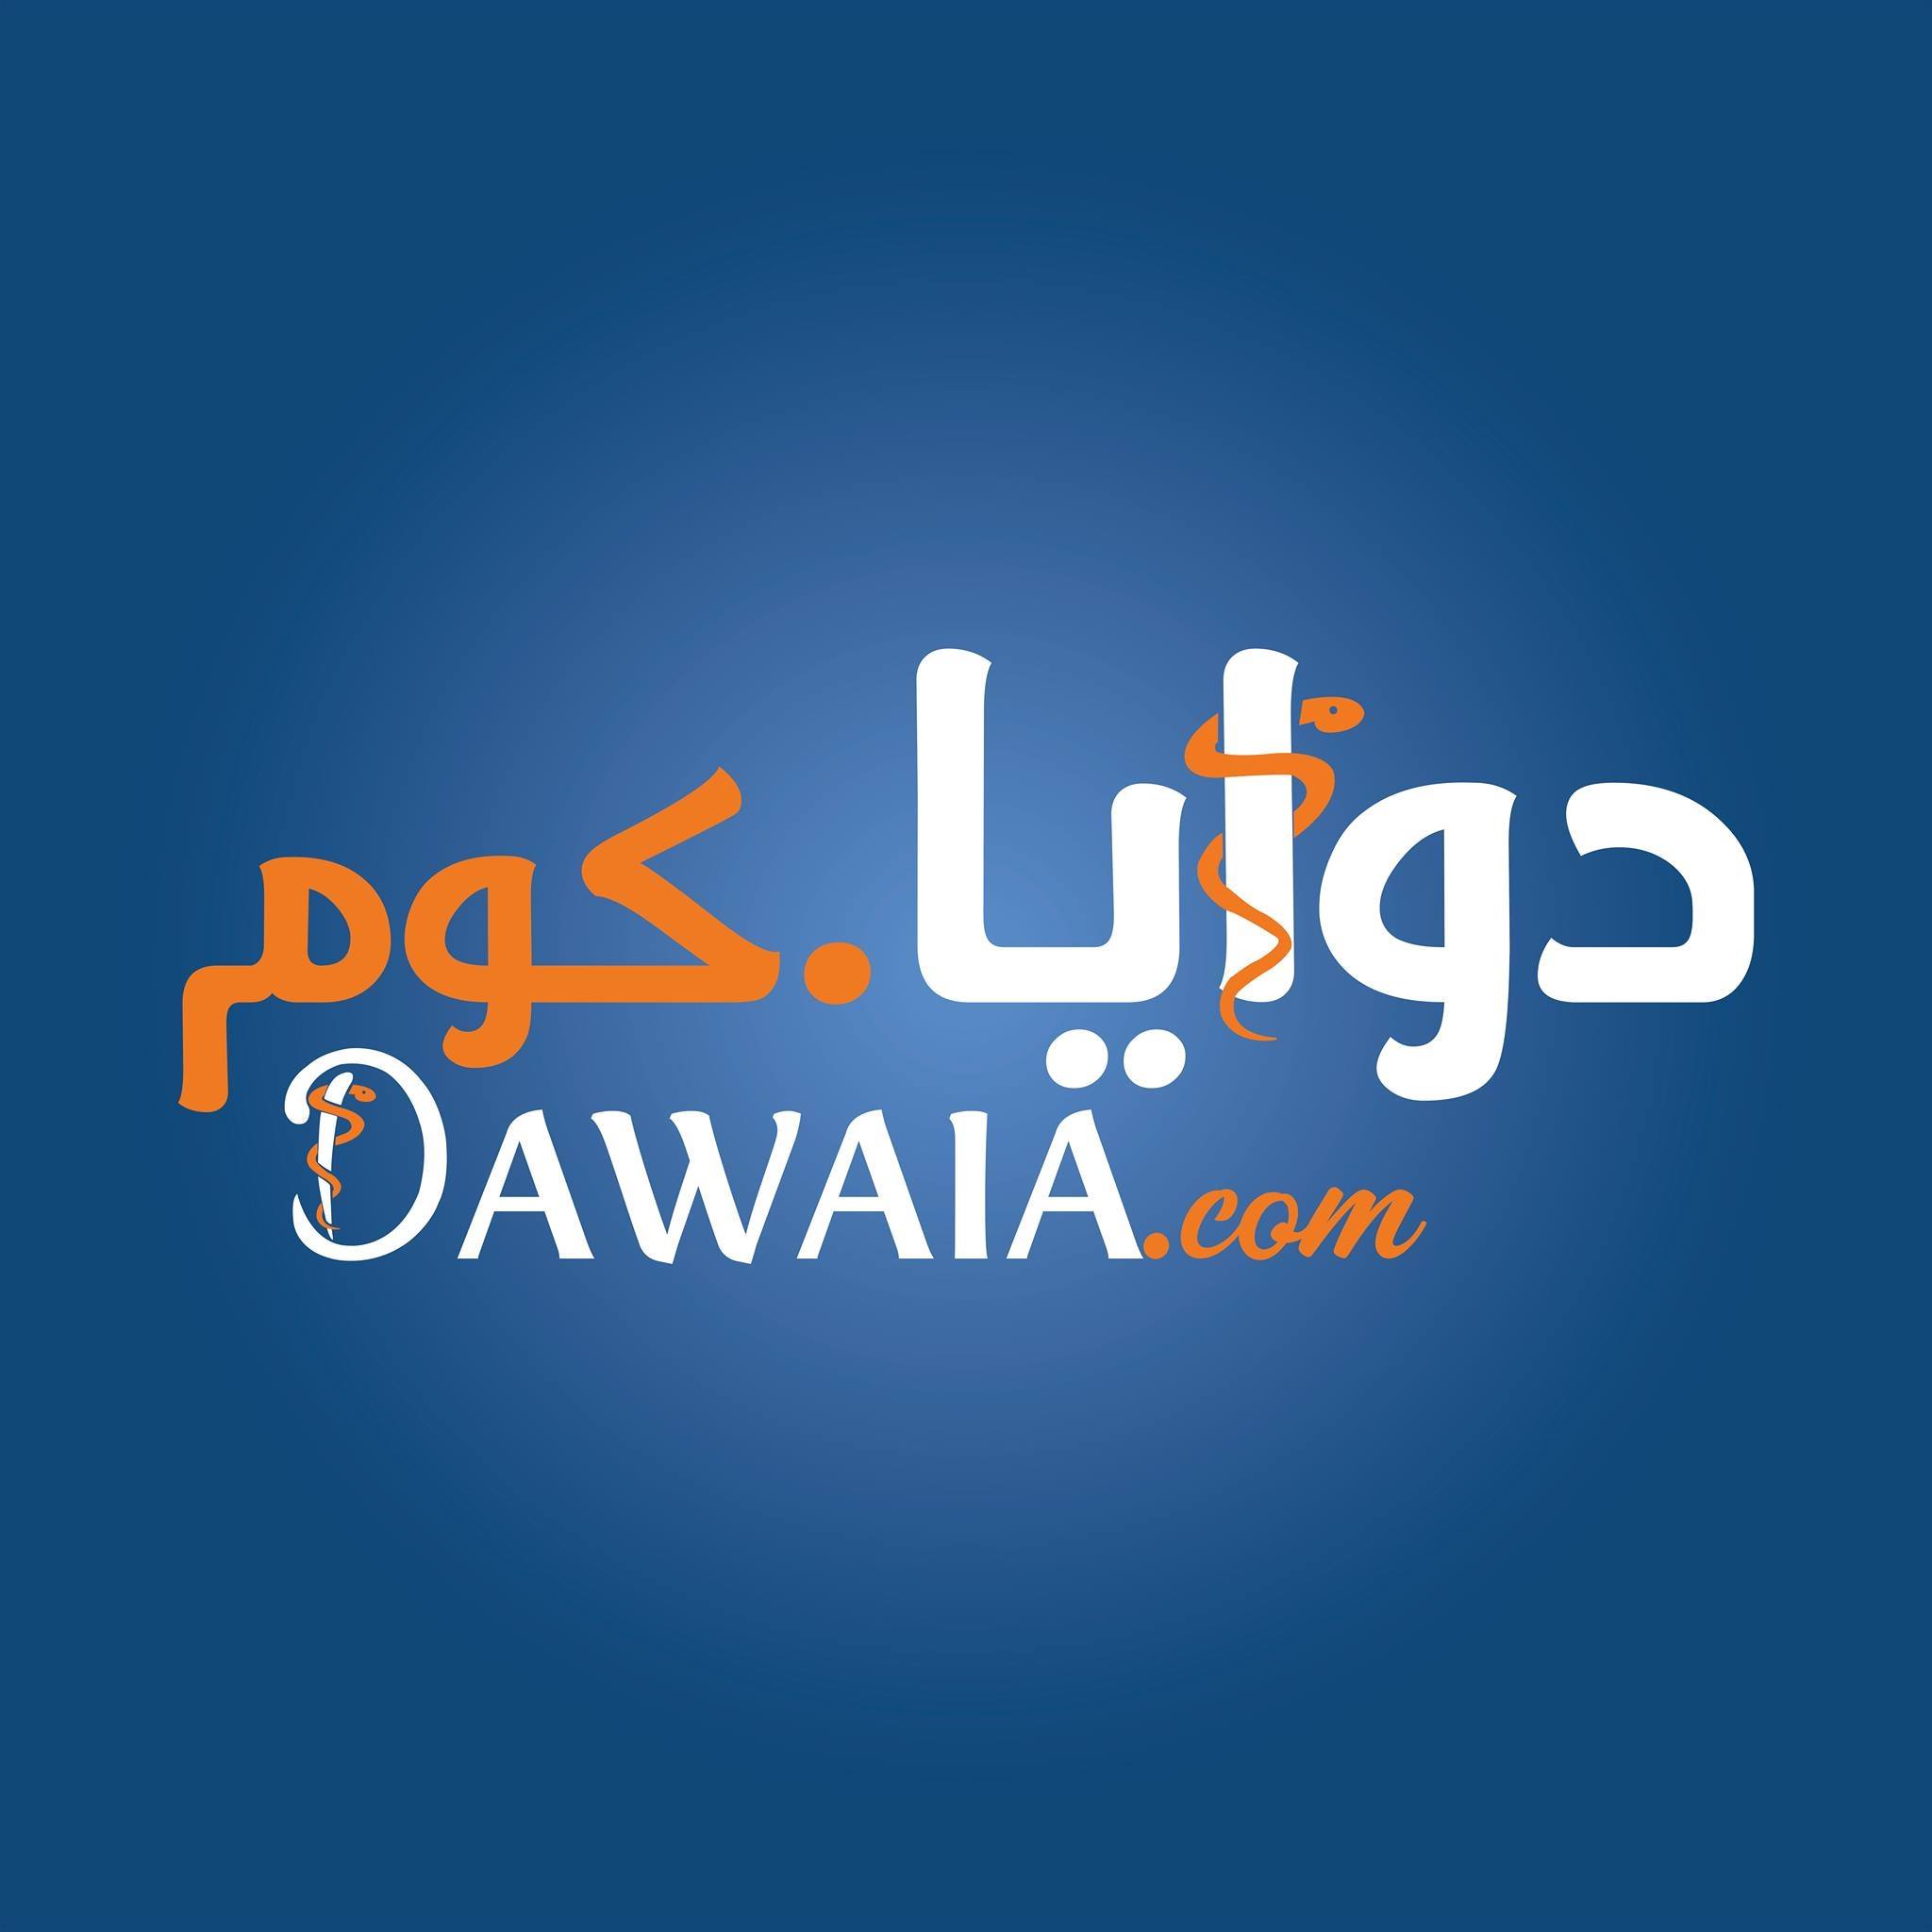 Dawaia.com